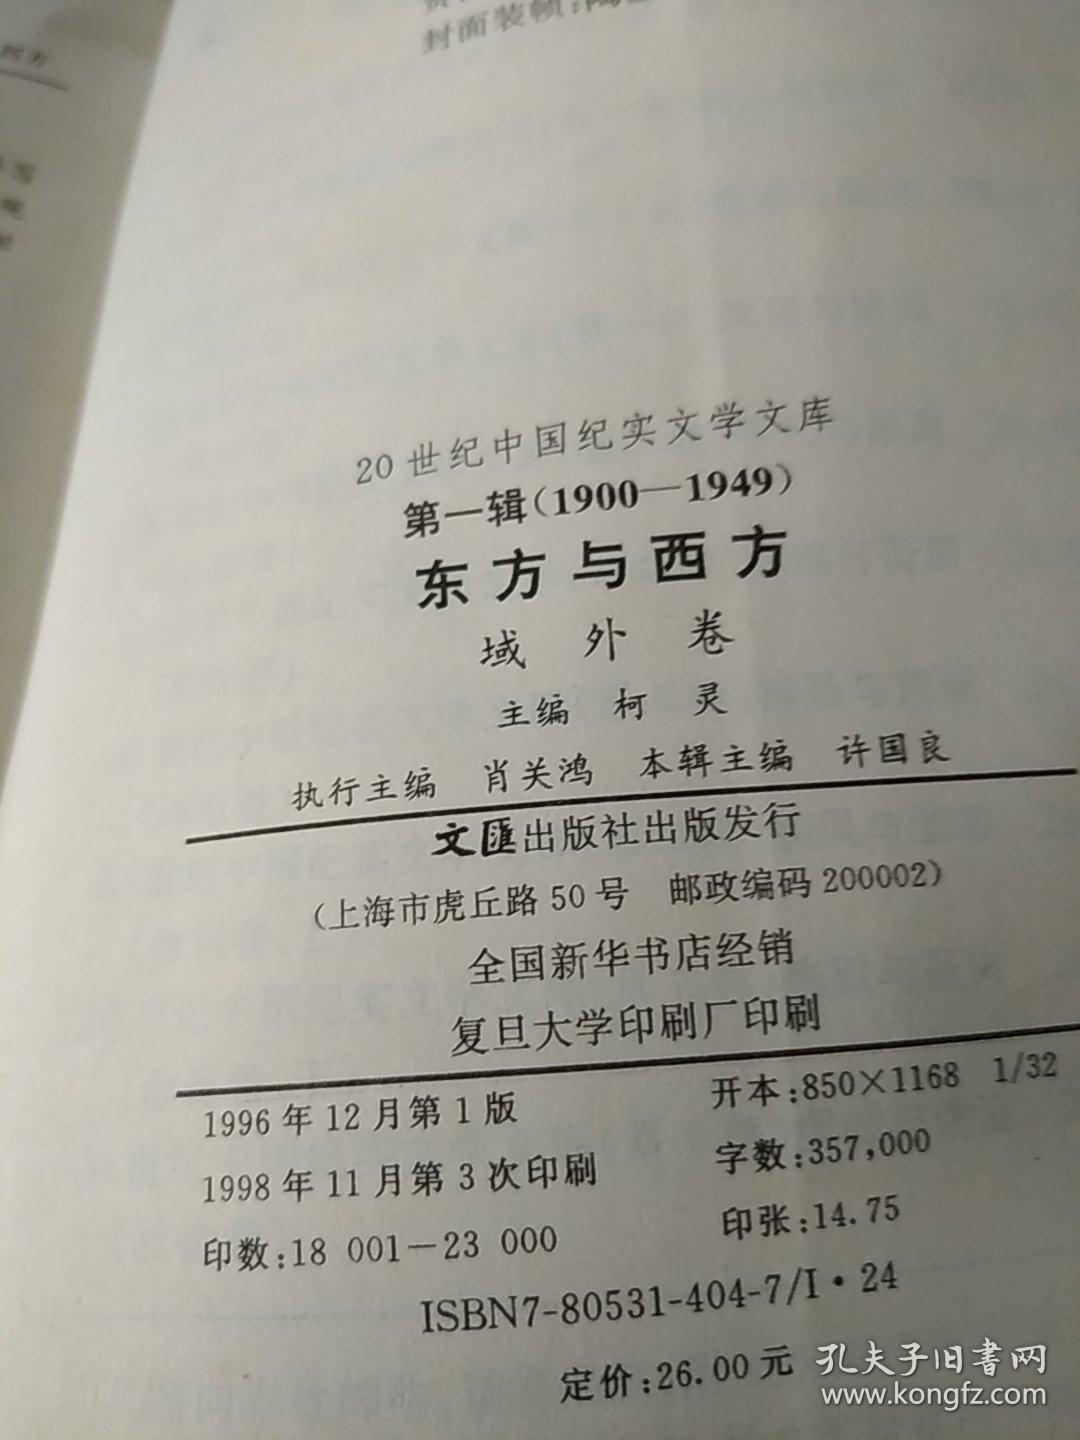 20世纪中国纪实文学文库 1900——1949 东方与西方 第一辑 域外卷